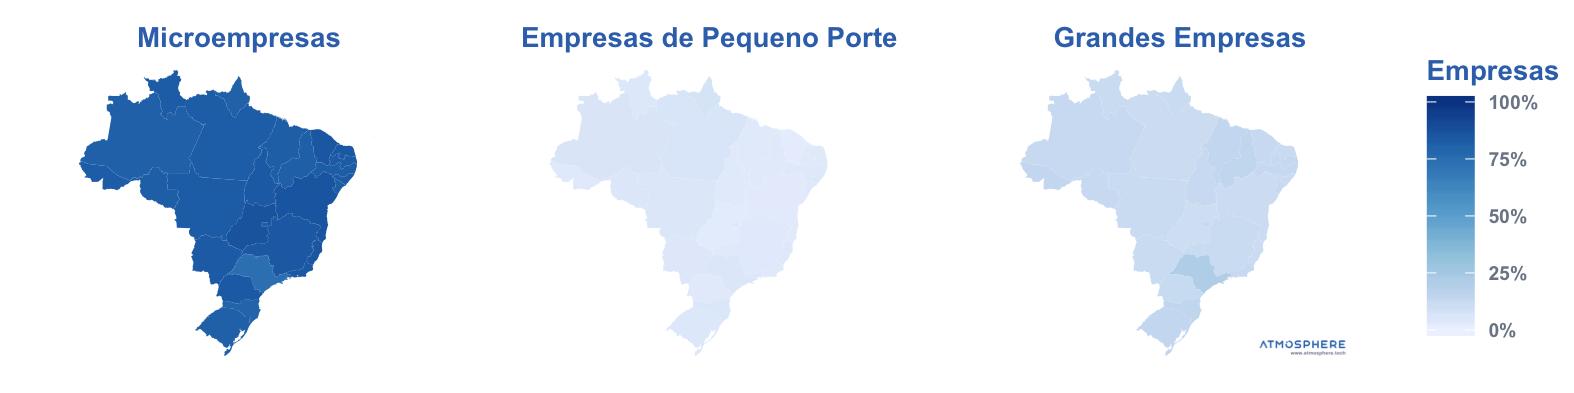 Atmosphere Porte Percentual das Empresas Ativas por Estado no Brasil